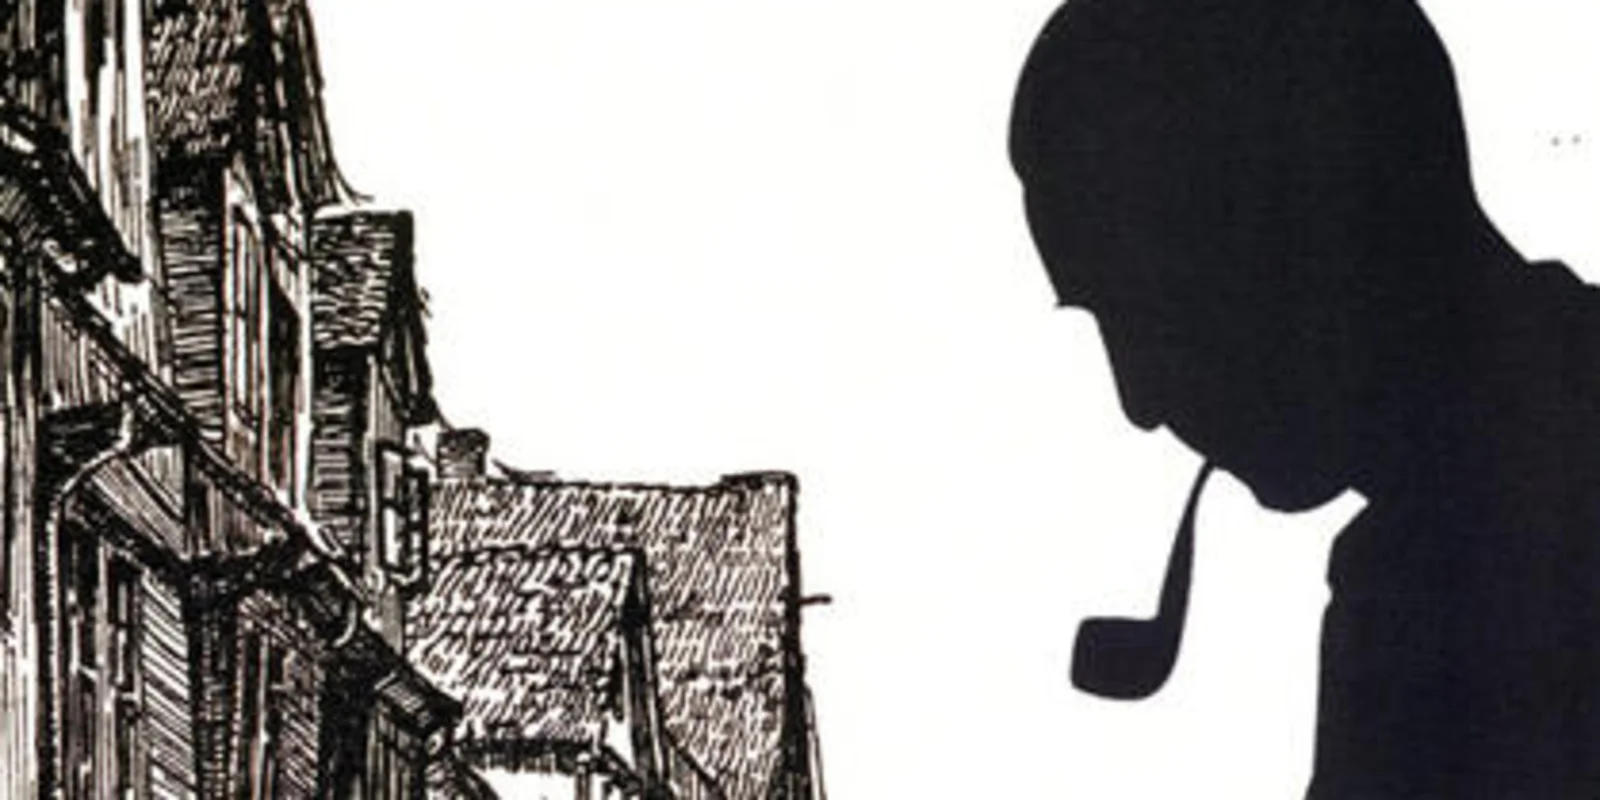 Links eine schwarz-weiß Aufnahme Mündener Fachwerkhäuser, rechts ein Scherenschnitt von Alfred Hesse mir Pfeife, Pinsel und Papier sowie Daten und Förderer. Oben steht "Mündener Künstler und Fachwerkvisionär", darunter in Handschrift "Alfred Hesse"